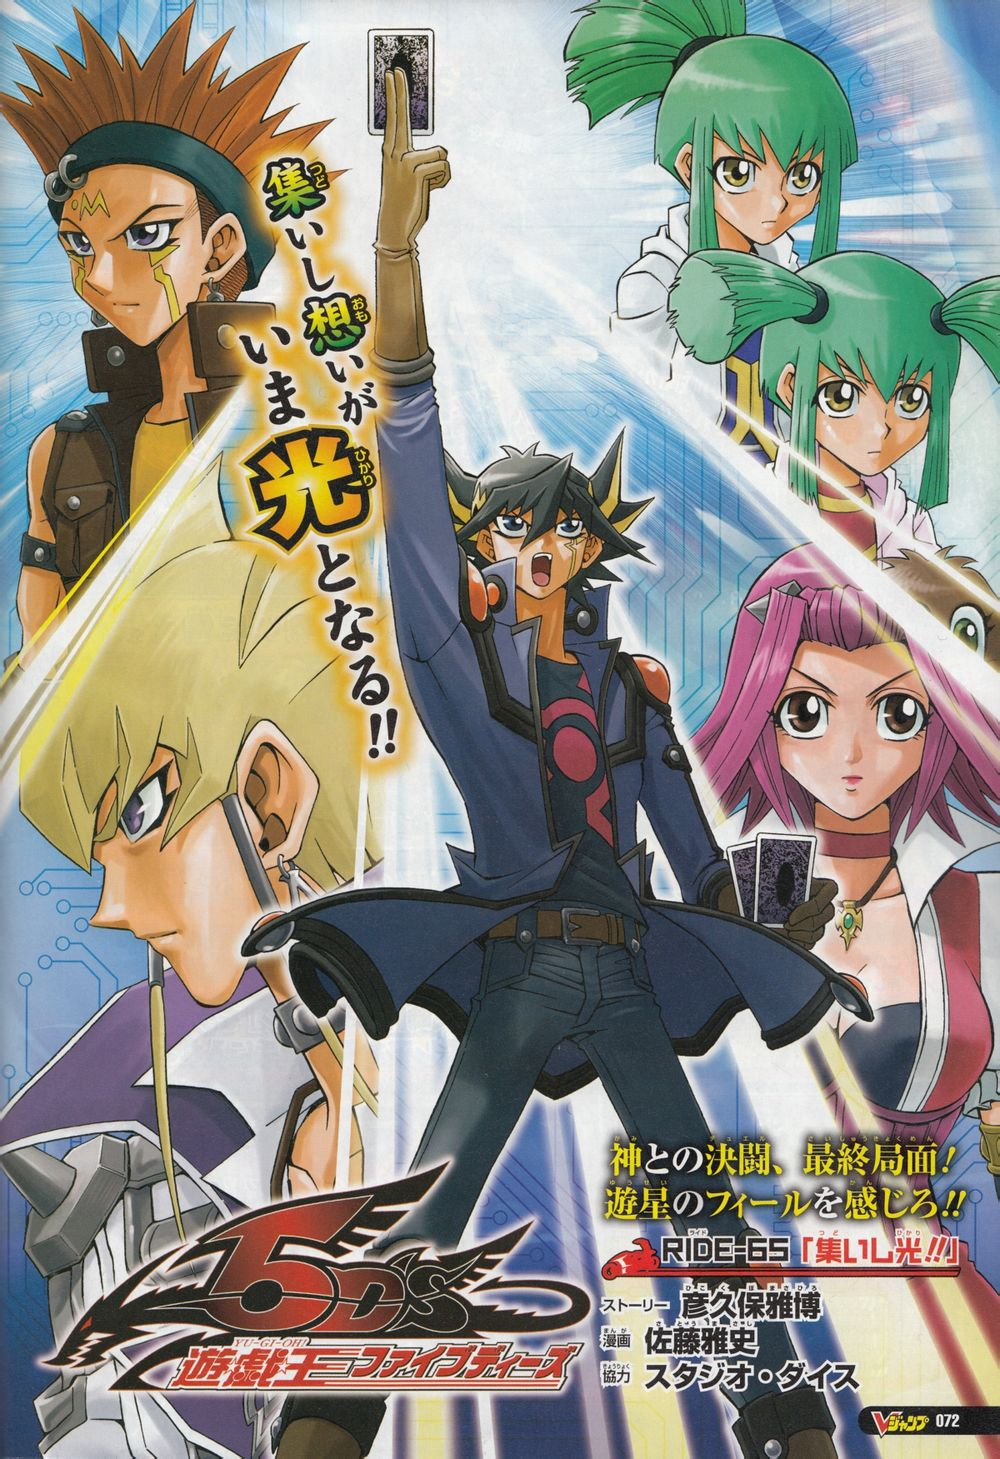 Yu-Gi-Oh! 5D's - Ride 002 - Yugipedia - Yu-Gi-Oh! wiki